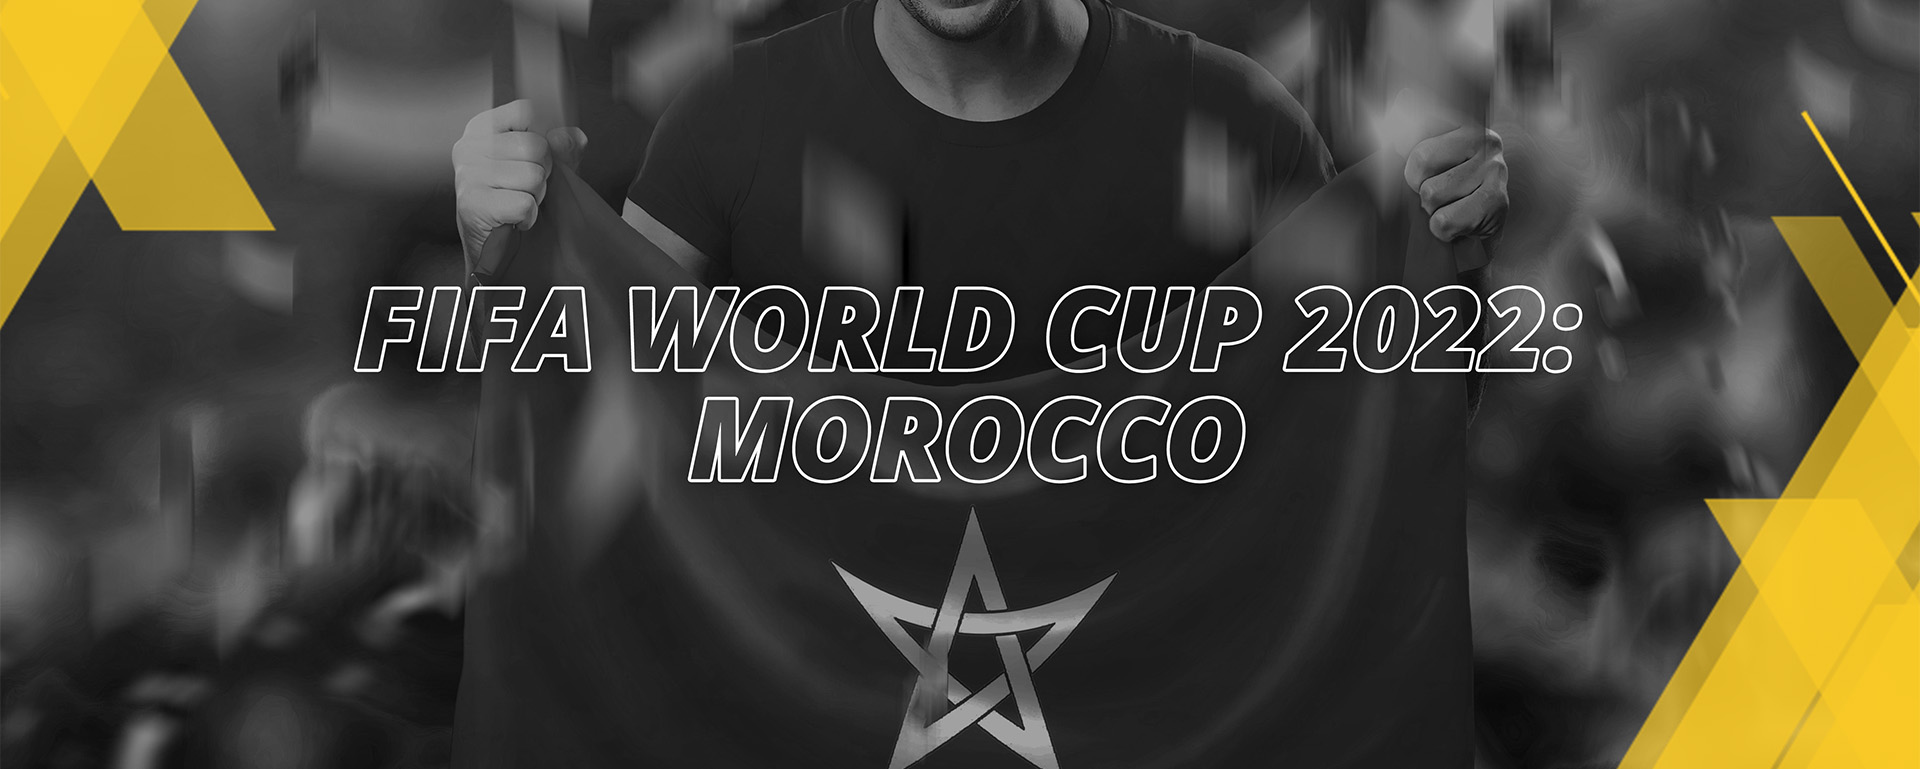 MOROCCO – FIFA WORLD CUP QATAR 2022 – FAN’S COMPENDIUM